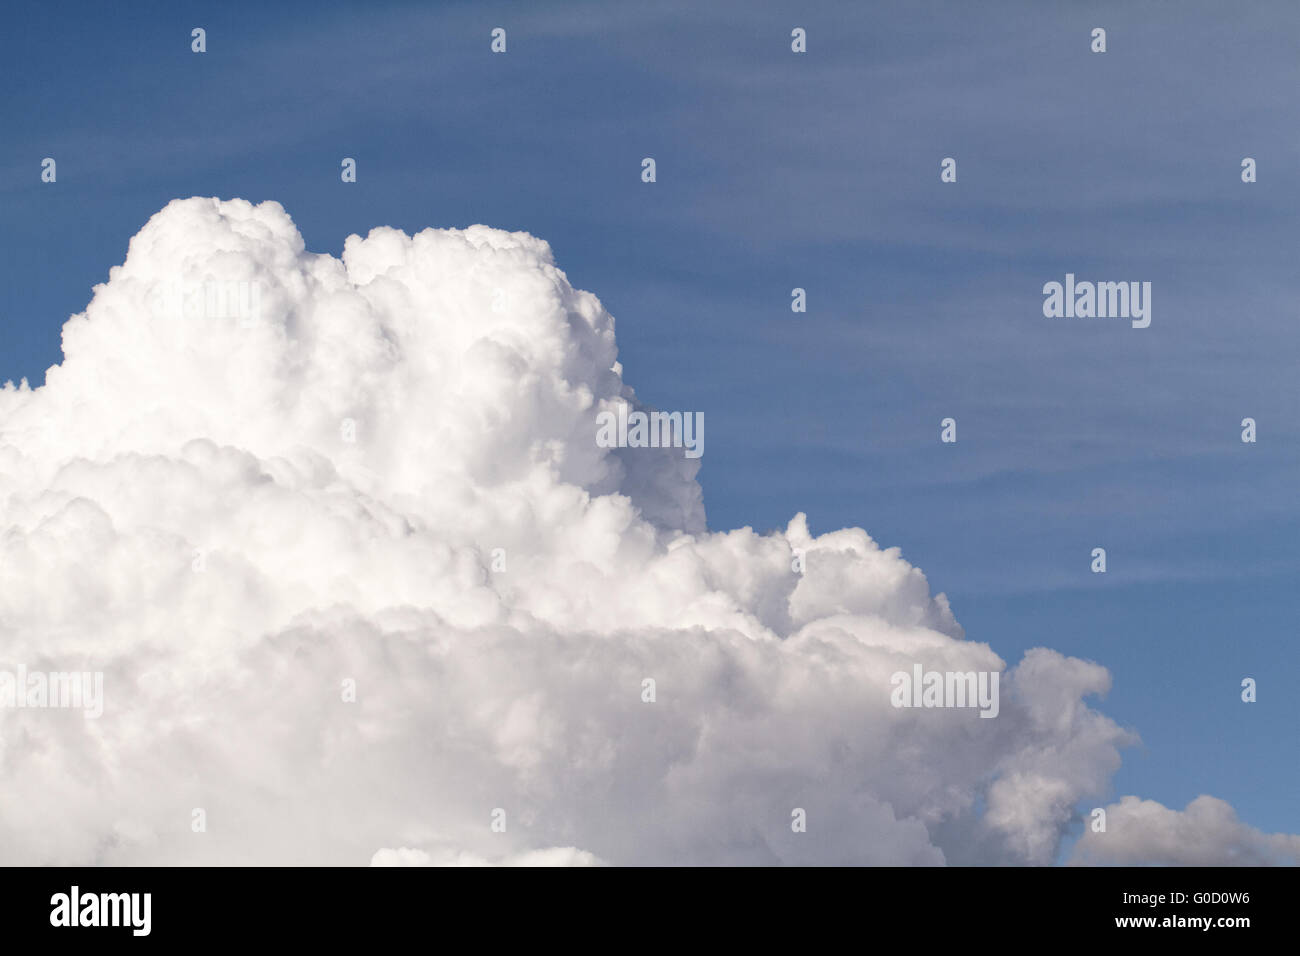 Hintergrund blauer Himmel mit weißen Wolken - Hintergrund Stockfoto